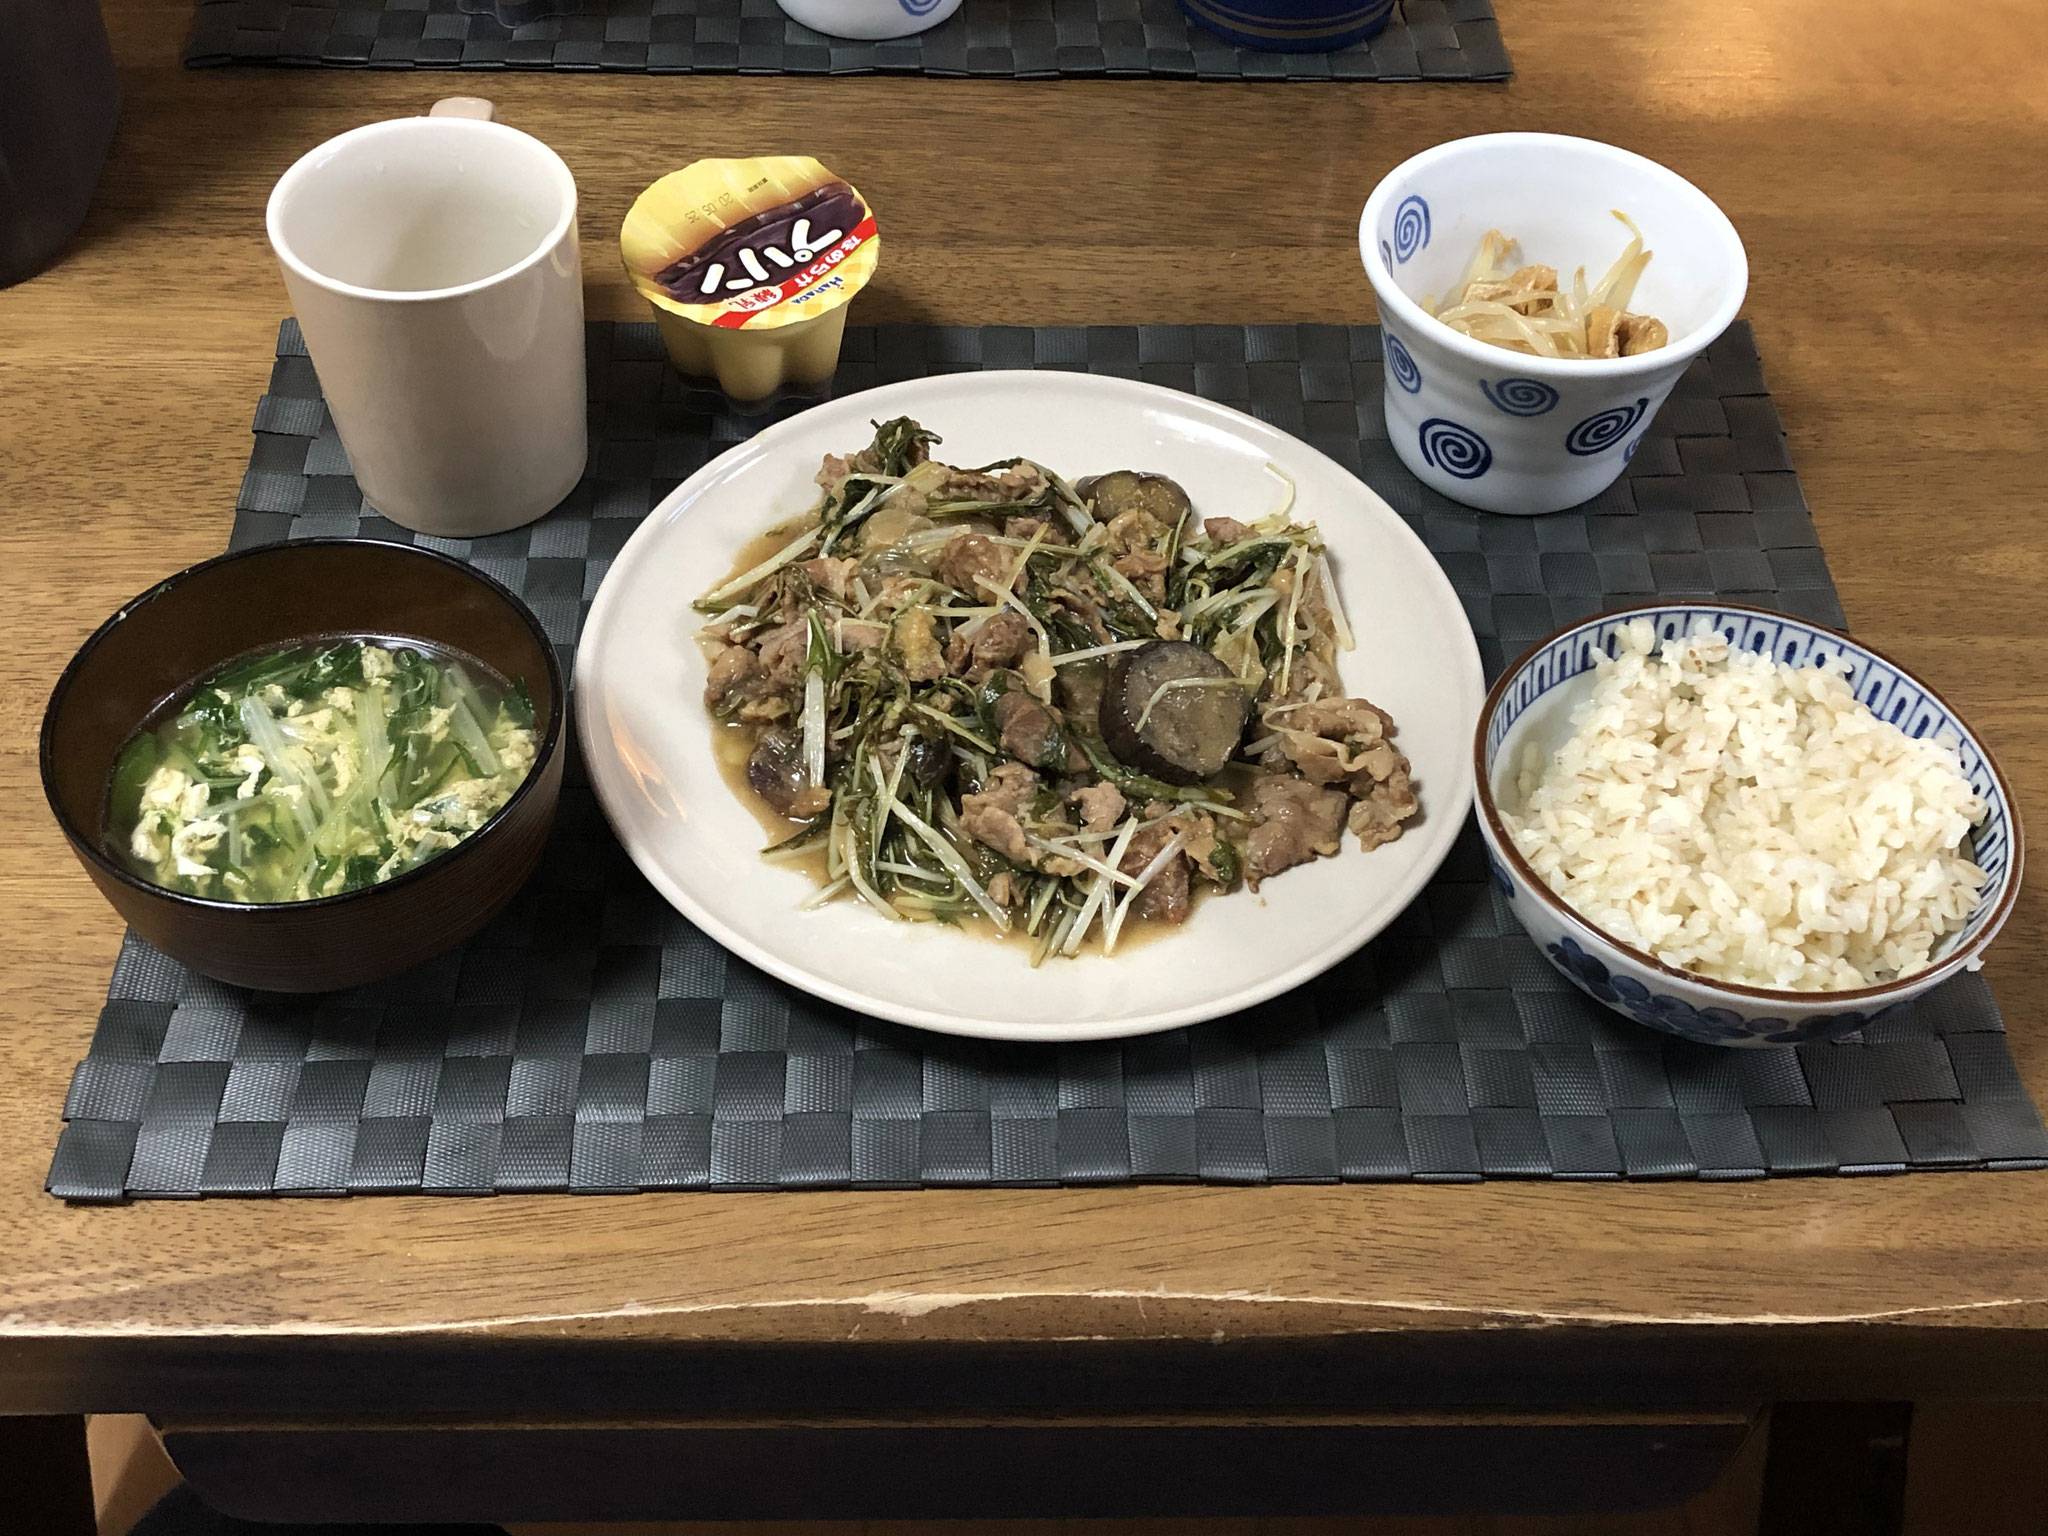 5月14日木曜日、Ohana夕食「なすと水菜の甘酢生姜炒め、もやしのナムル、たまごと水菜の中華スープ、プリン」